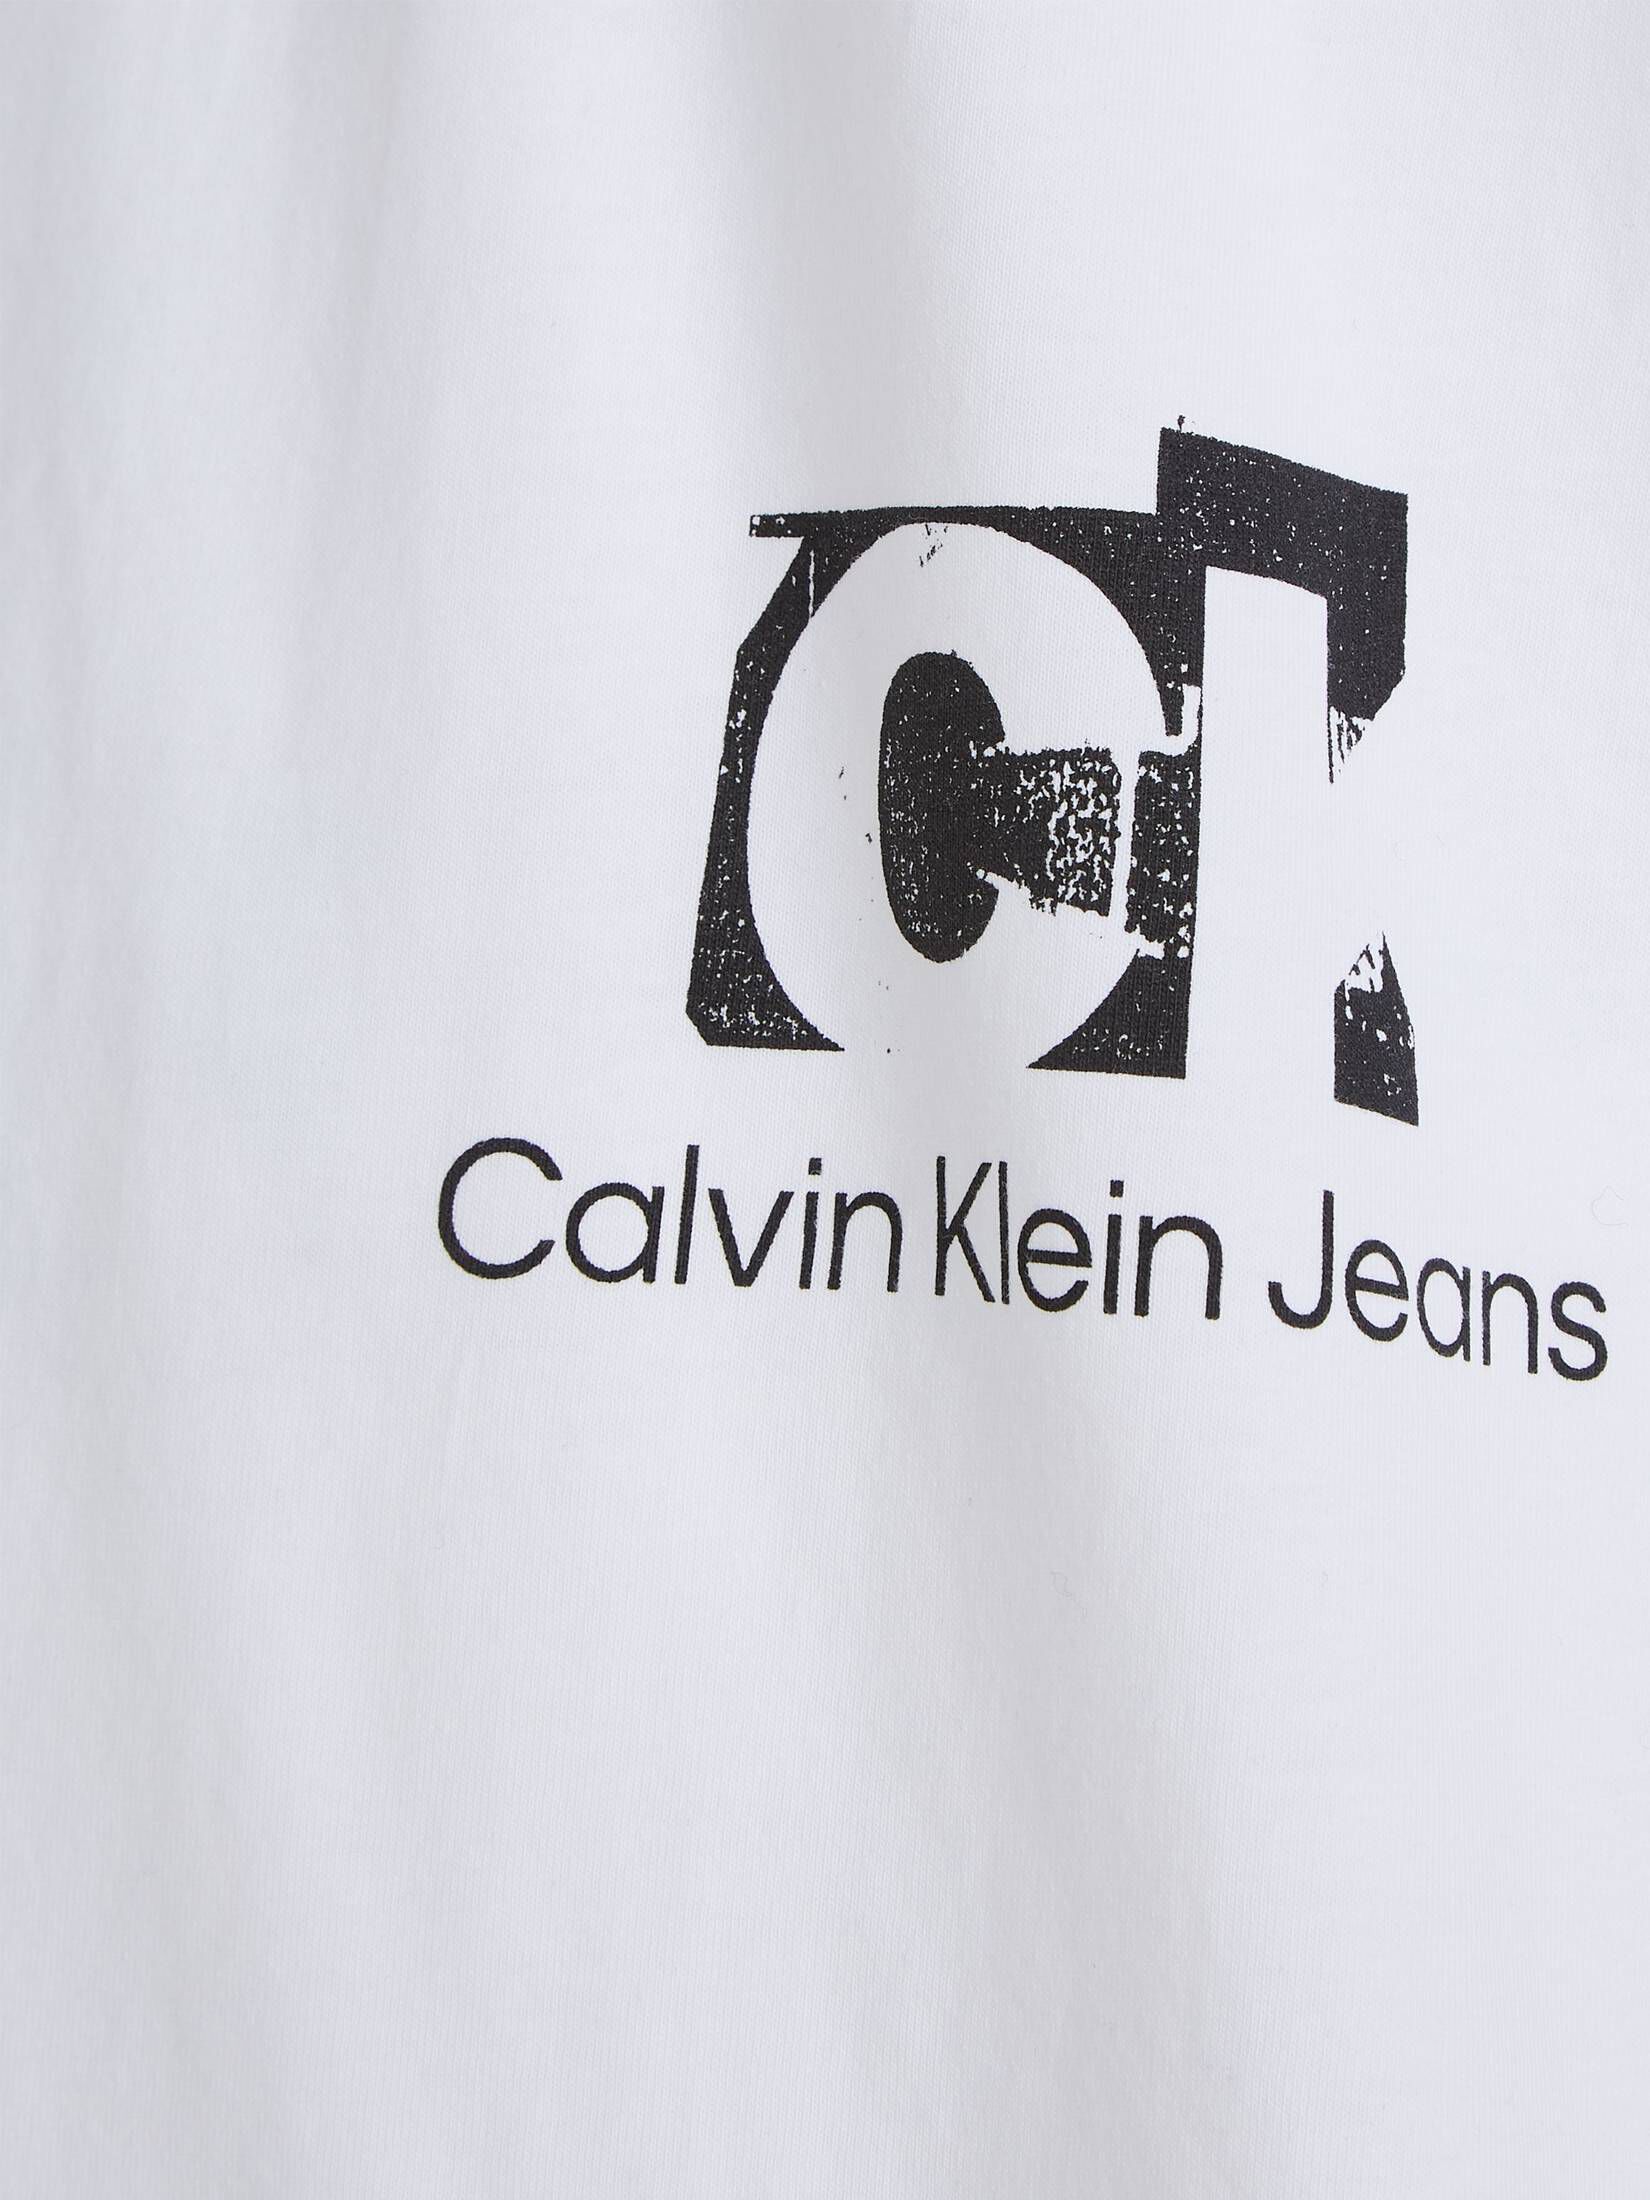 CALVIN KLEIN JEANS Herren T-Shirt mit CONNECTED Oversized engelhorn kaufen | Bio-Baumwolle LAYER LANDSCAPE Fit TEE